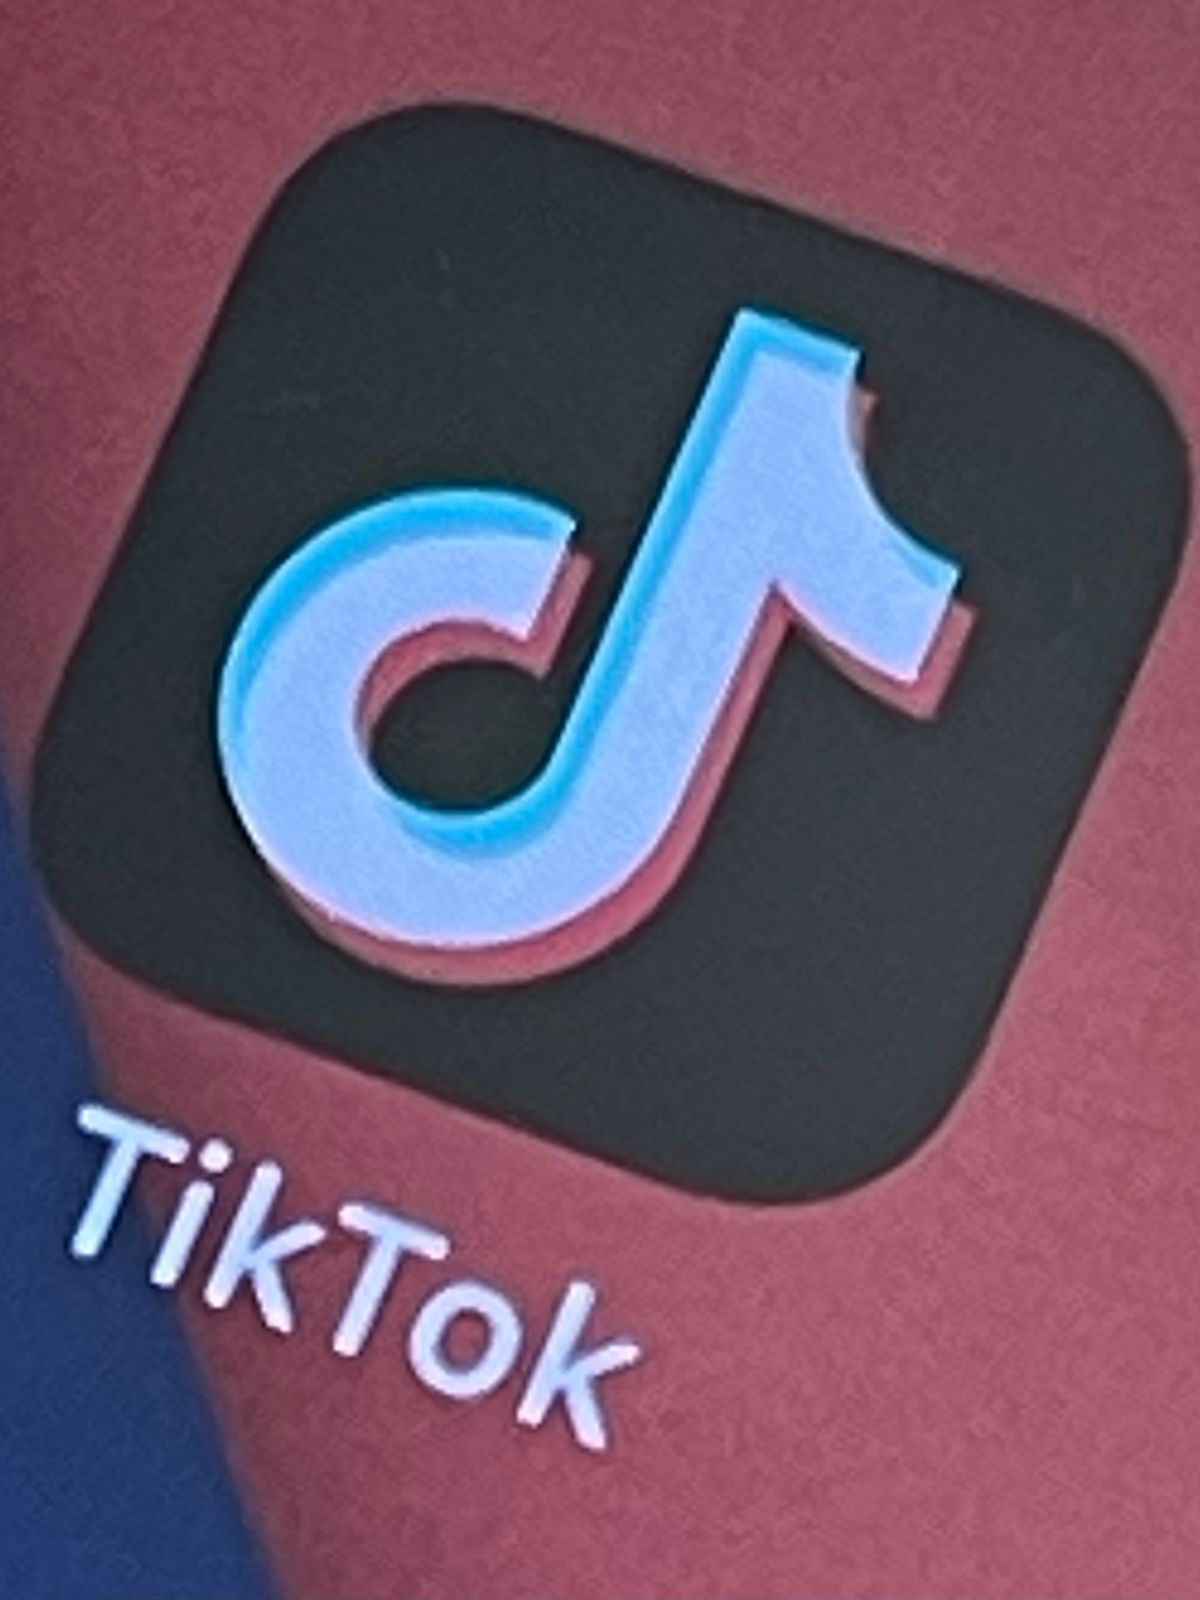 「TikTok」運営会社、アプリ“利用禁止”法は表現の自由を侵害…米政府を提訴